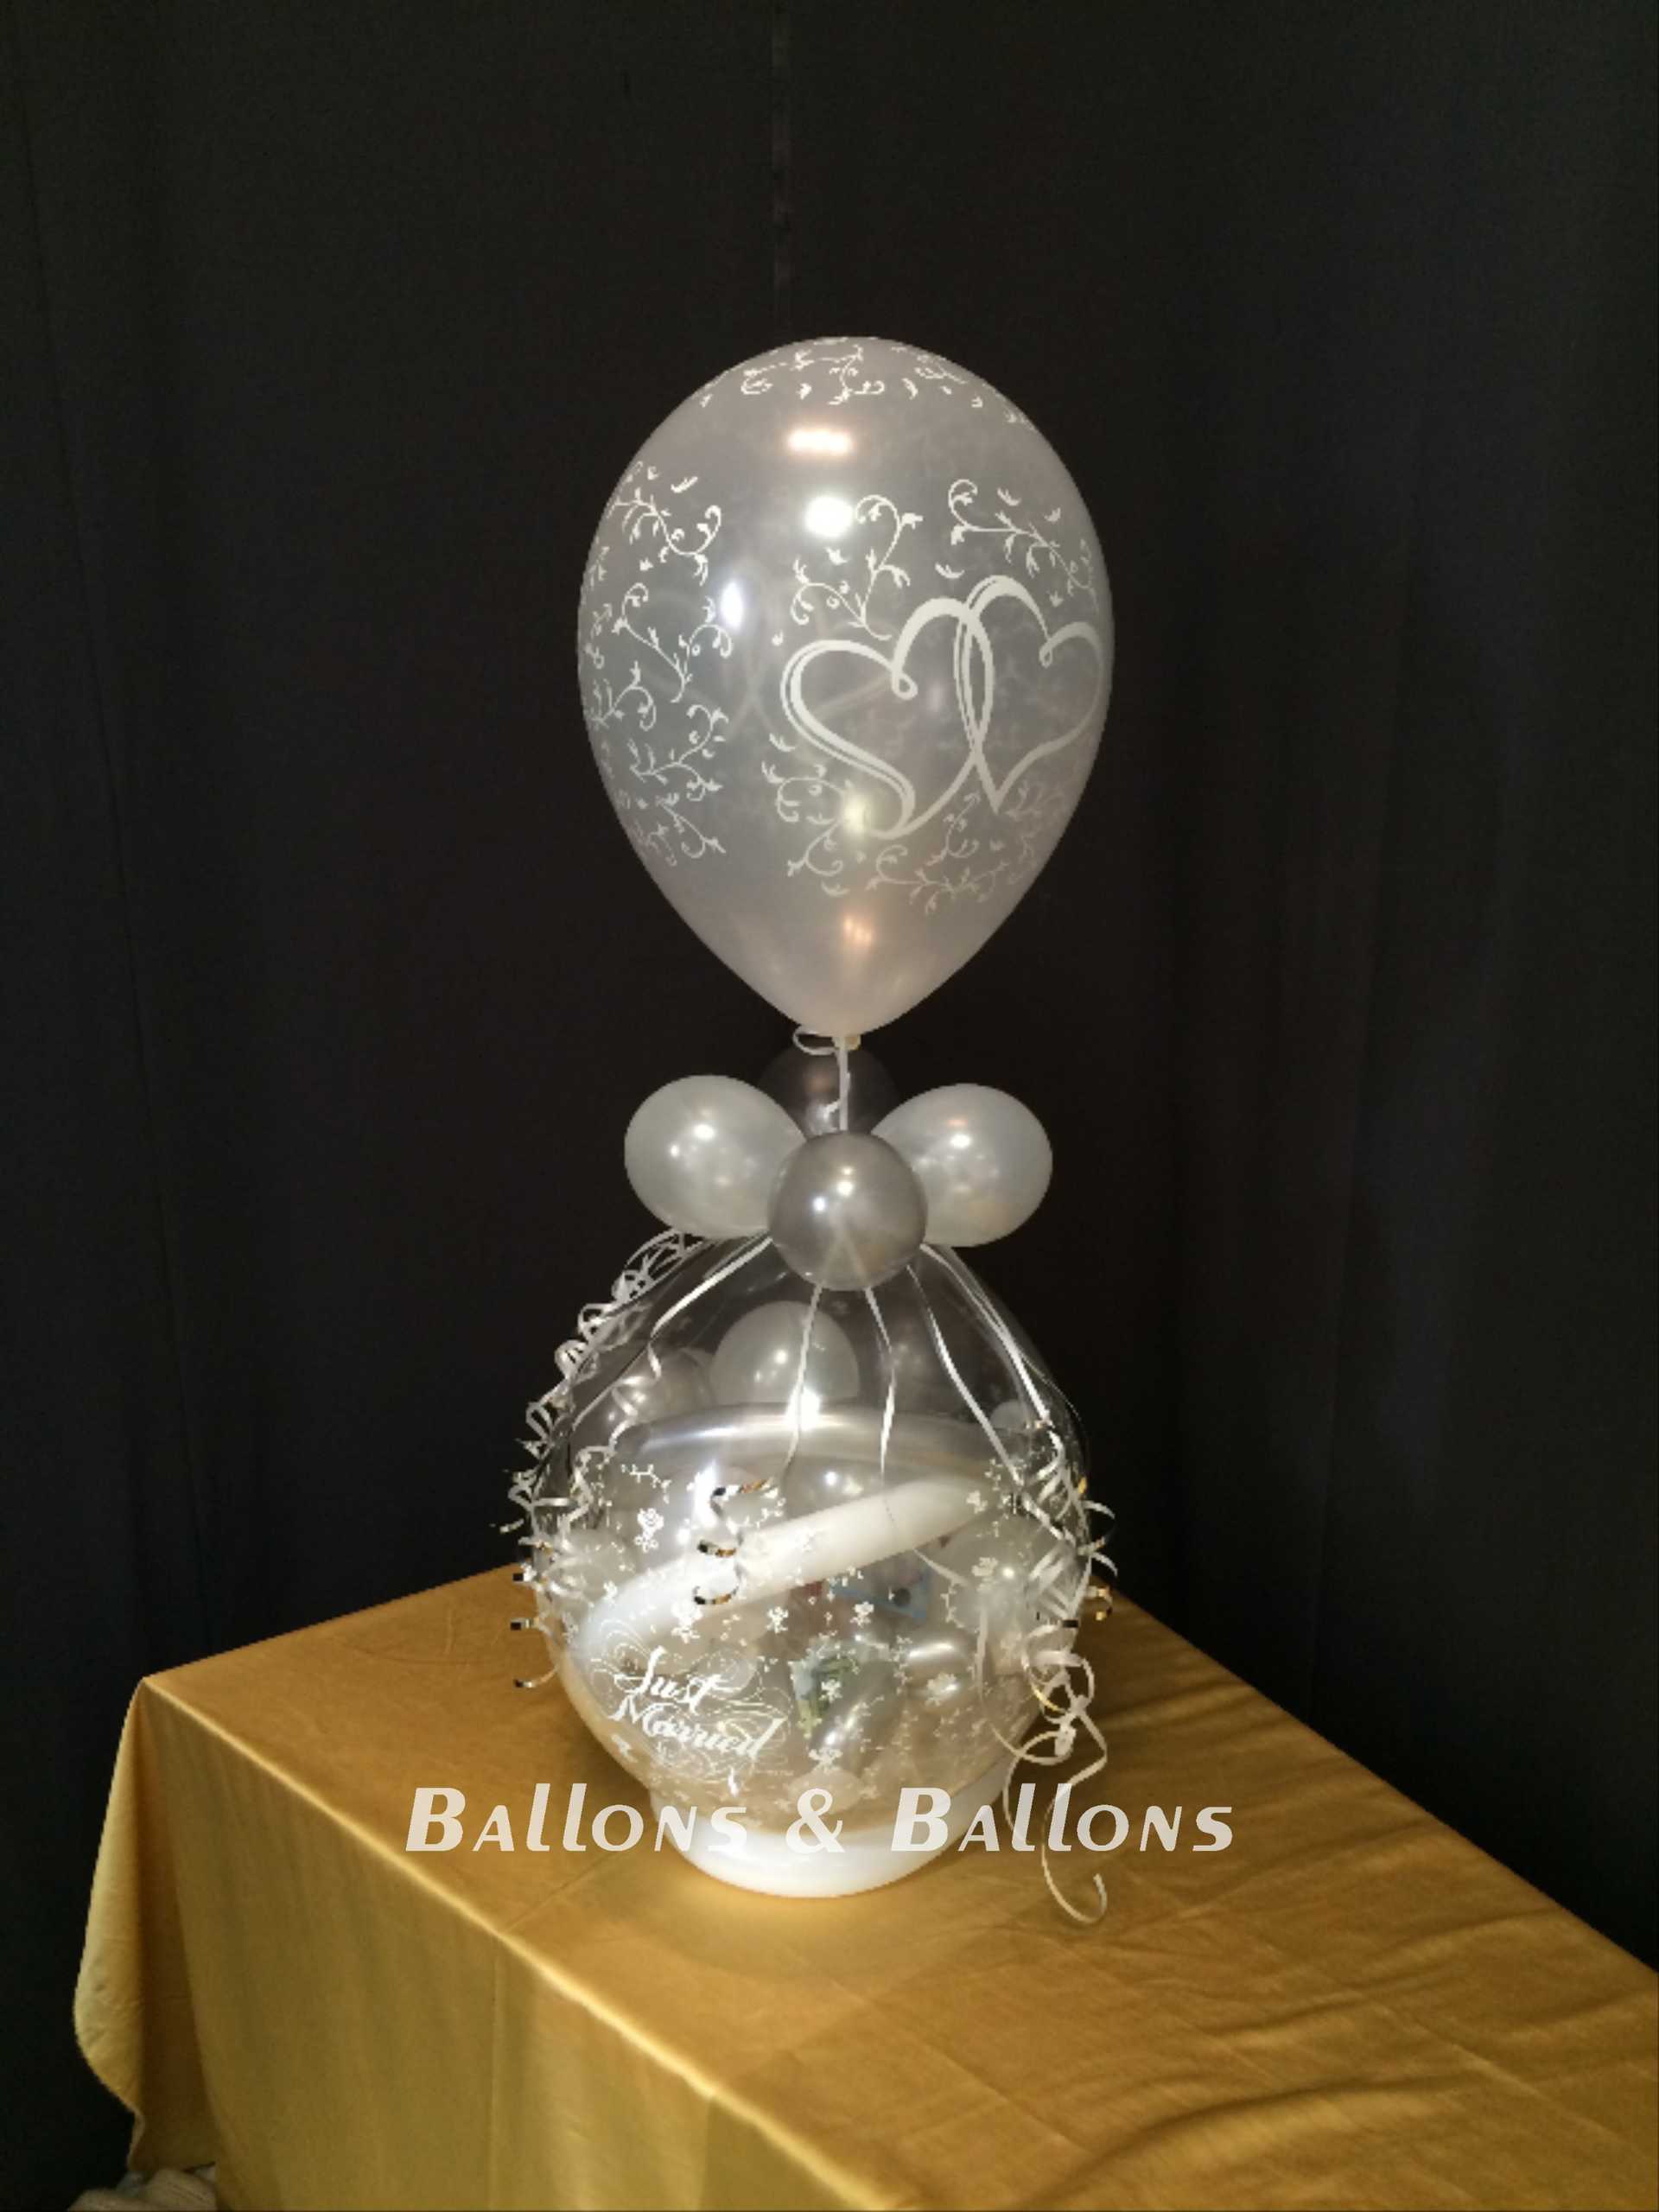 Ein weißer Ballon mit zwei silbernen Ballons, bunte Ballondeko.